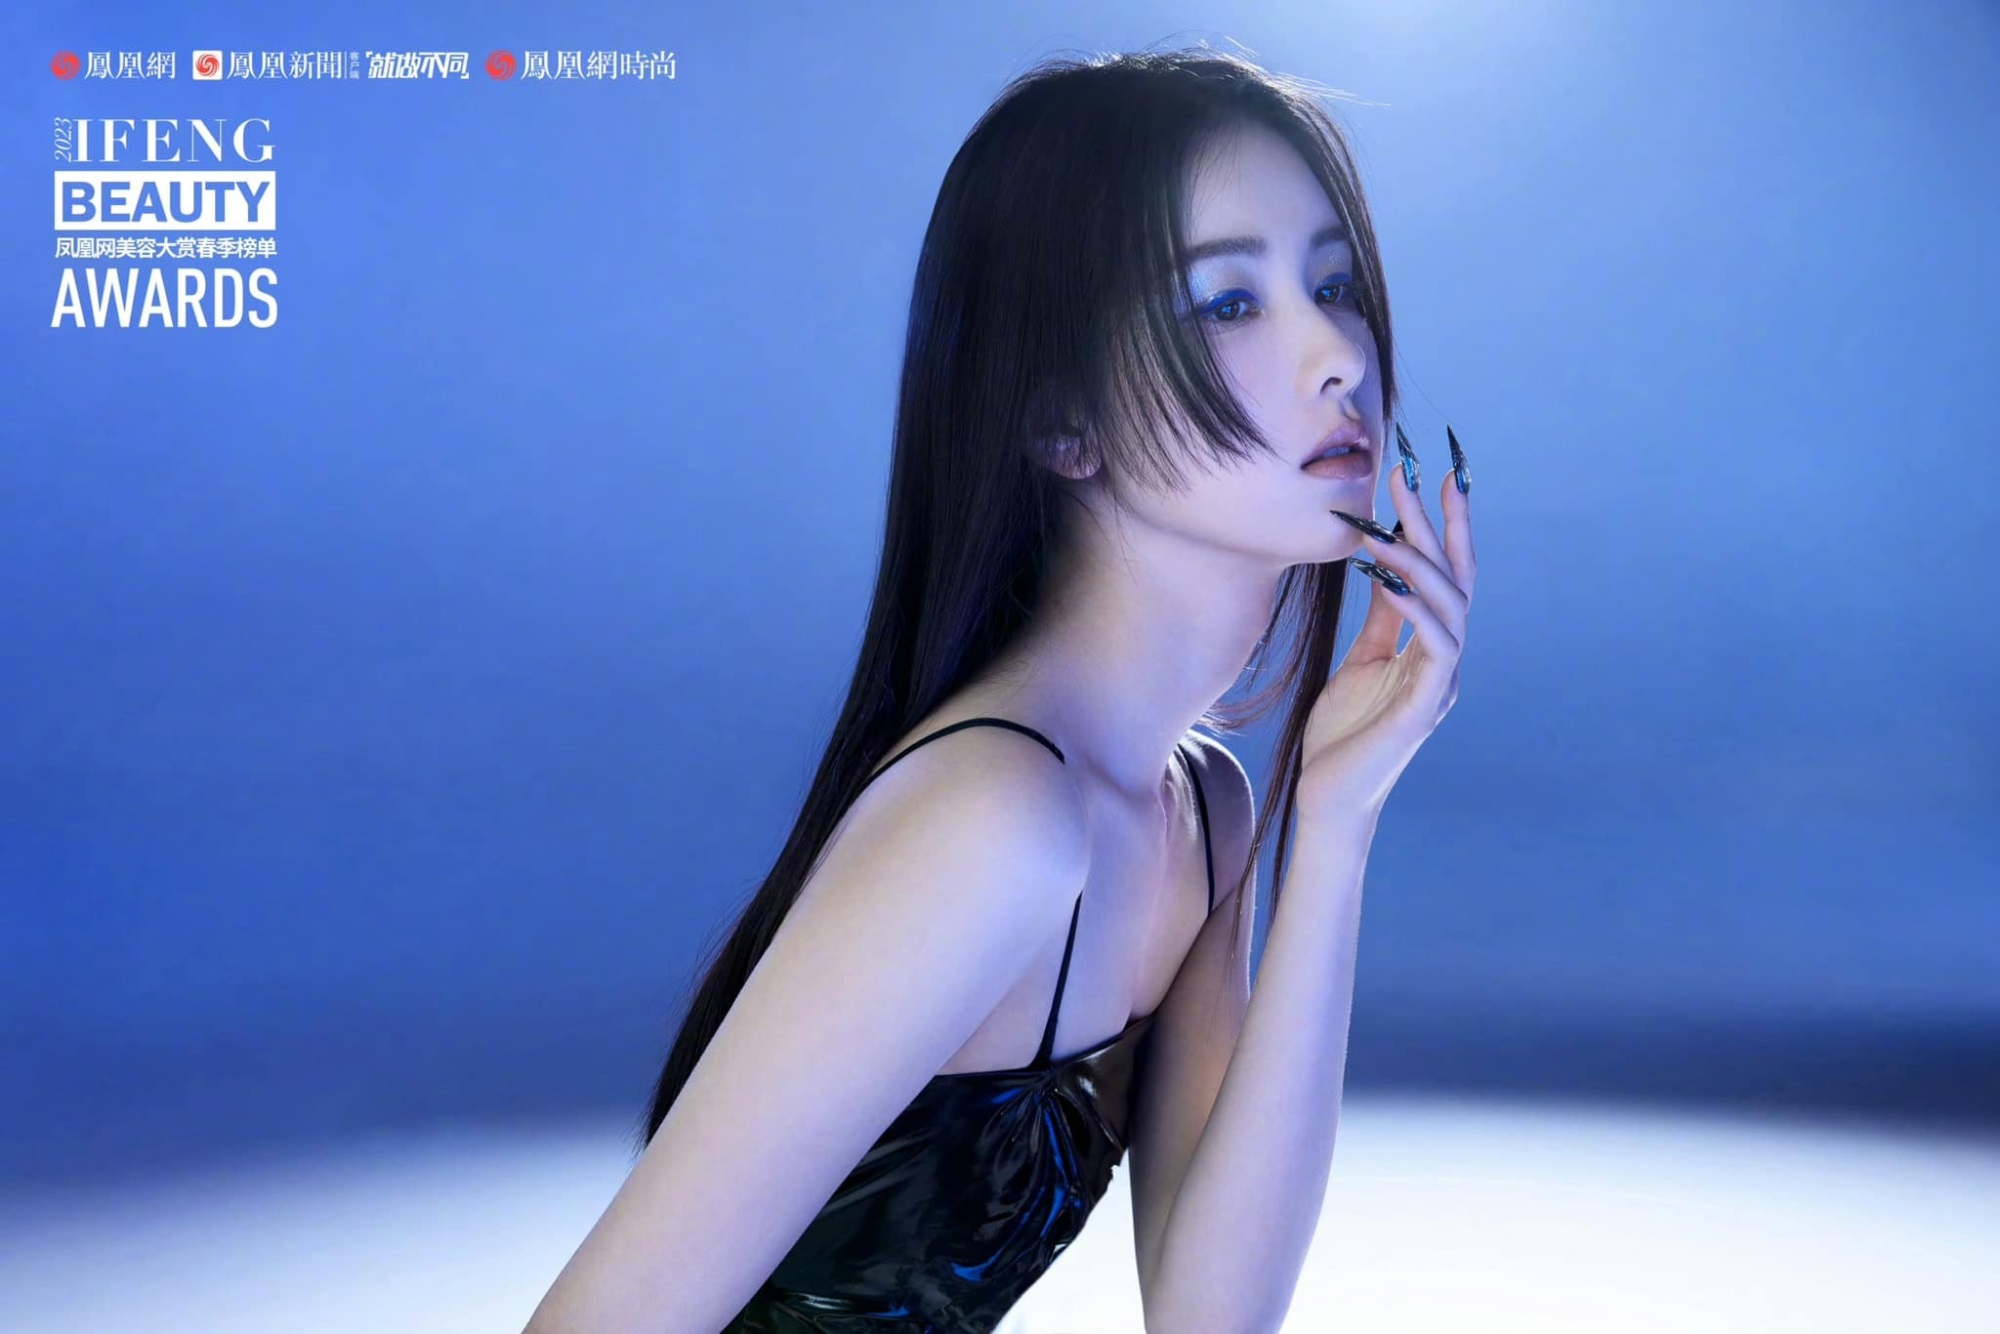 Trần Đô Linh trở thành đại sứ mùa xuân của tạp chí Ifeng Beauty Awards, xinh đẹp 'động lòng người' nhưng không bằng 'đàn chị' Triệu Lệ Dĩnh ở một điểm - Ảnh 1